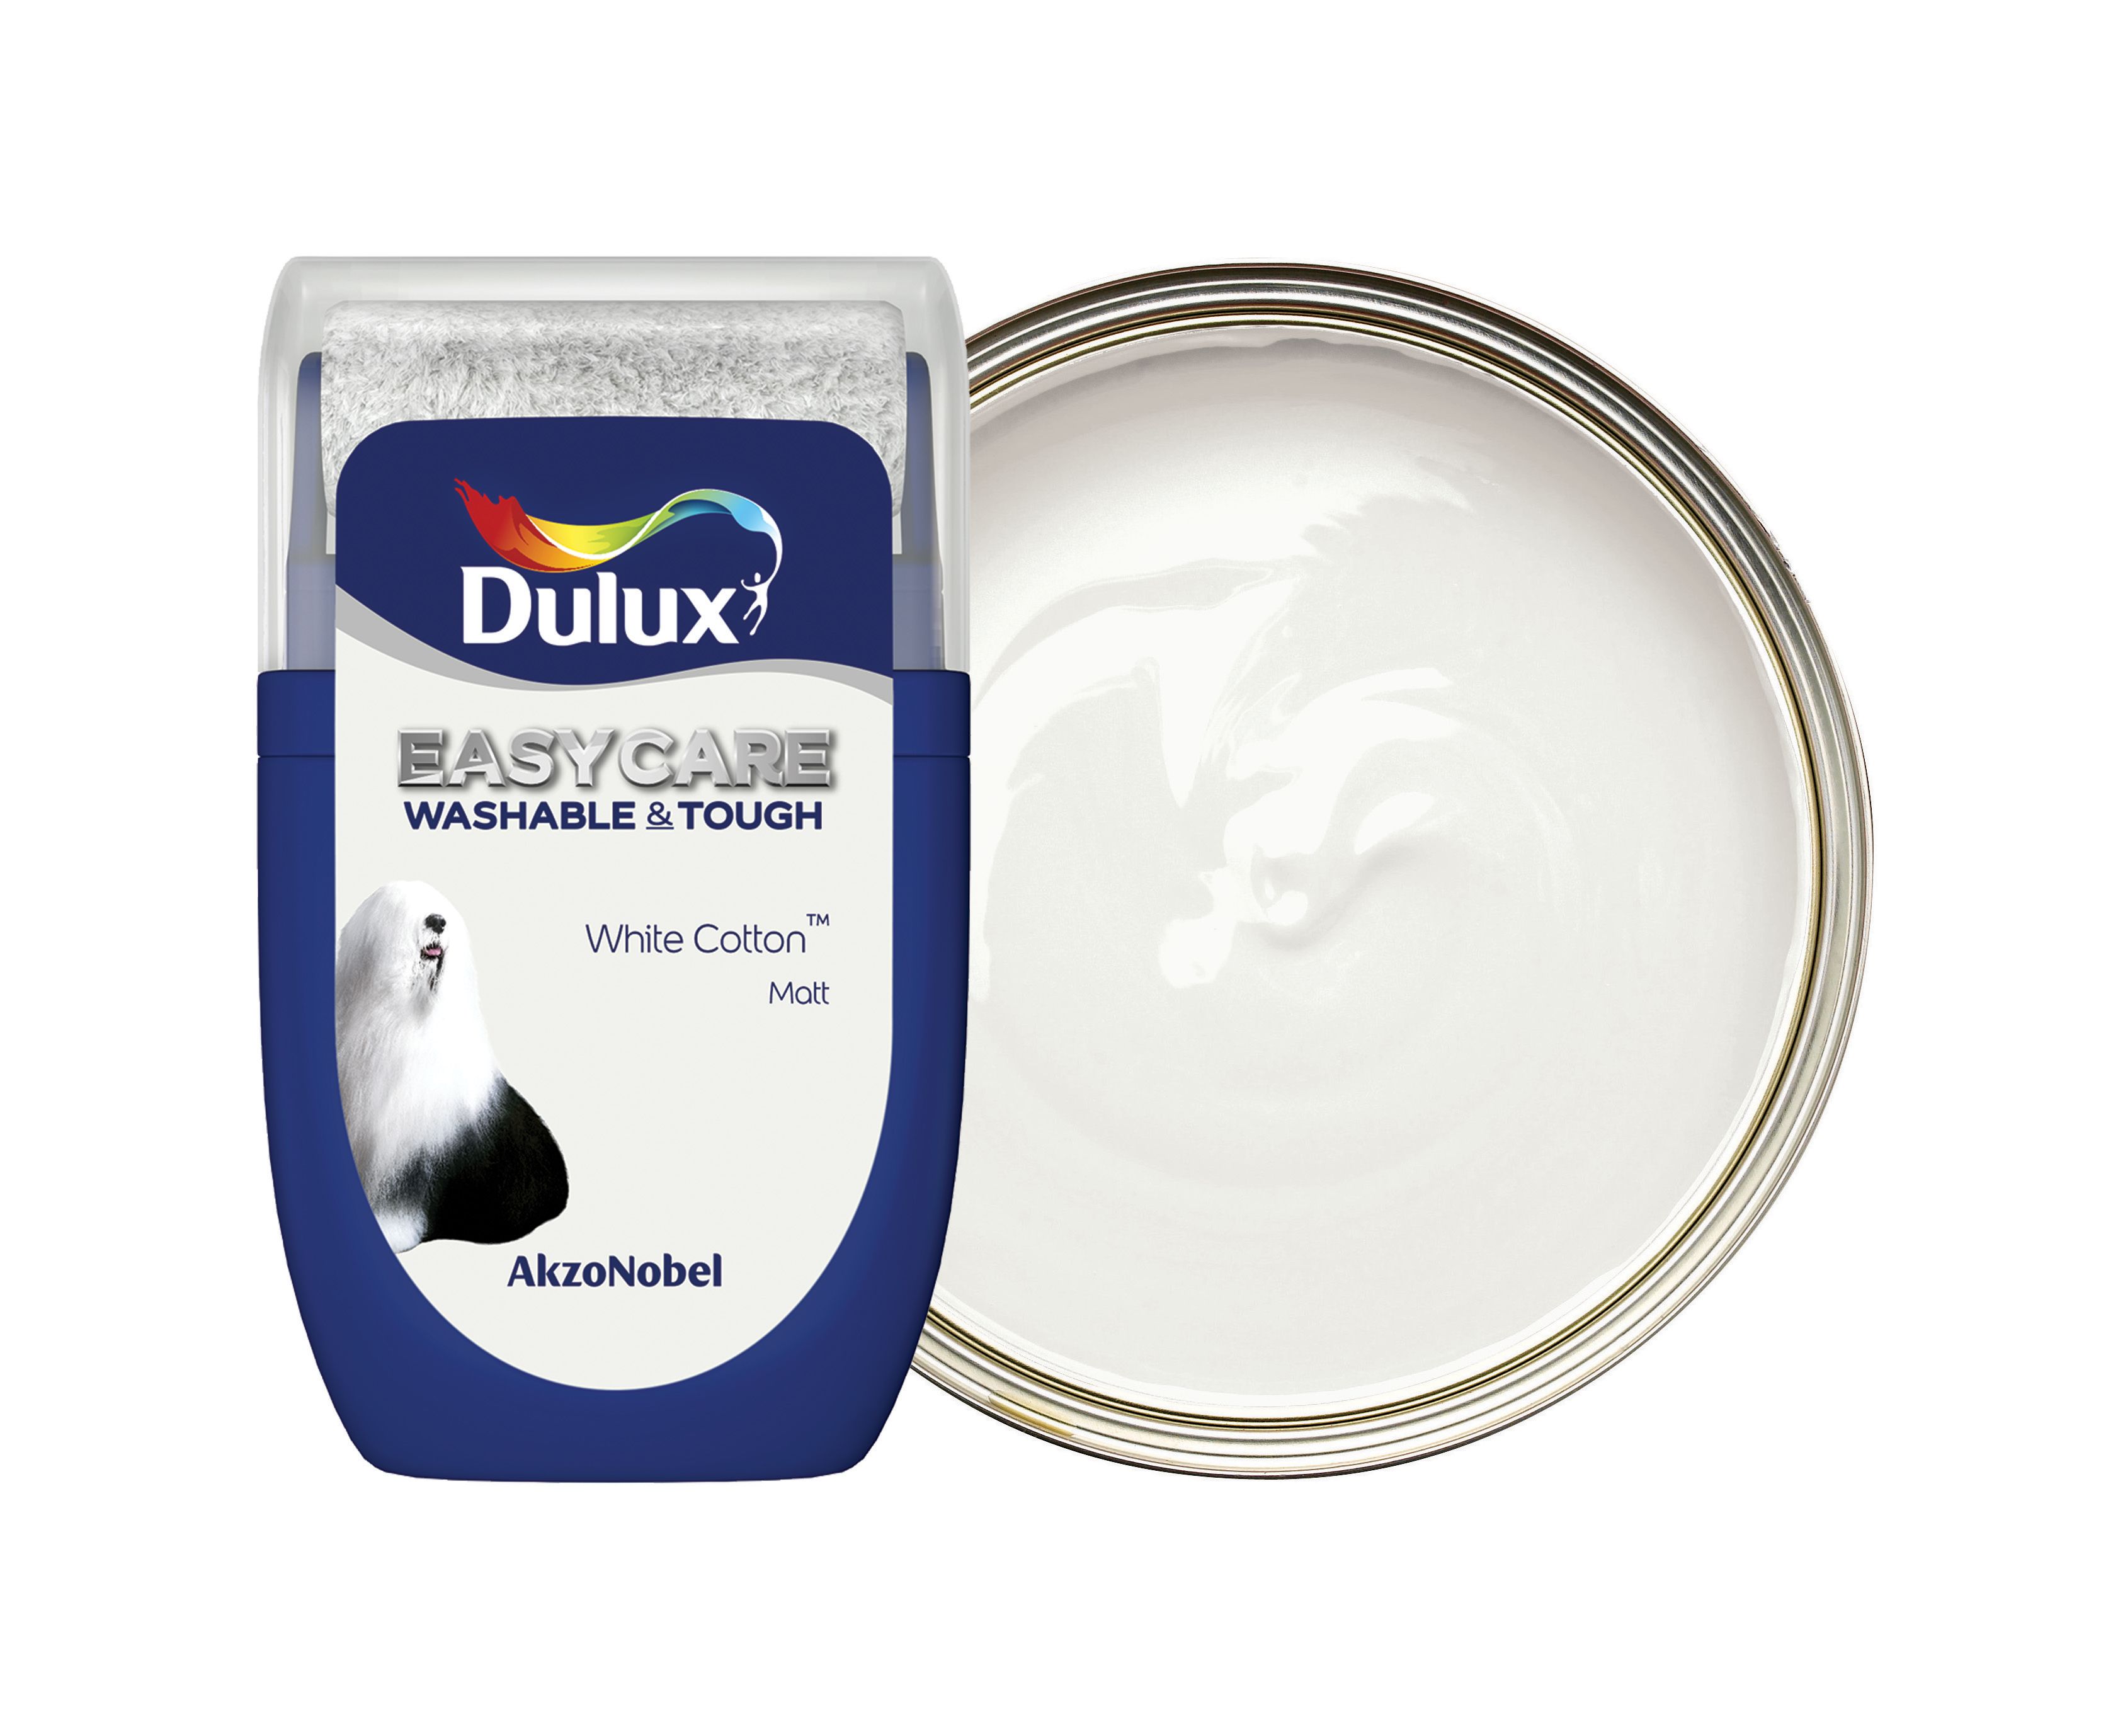 Dulux Easycare Washable & Tough Paint Tester Pot - White Cotton - 30ml